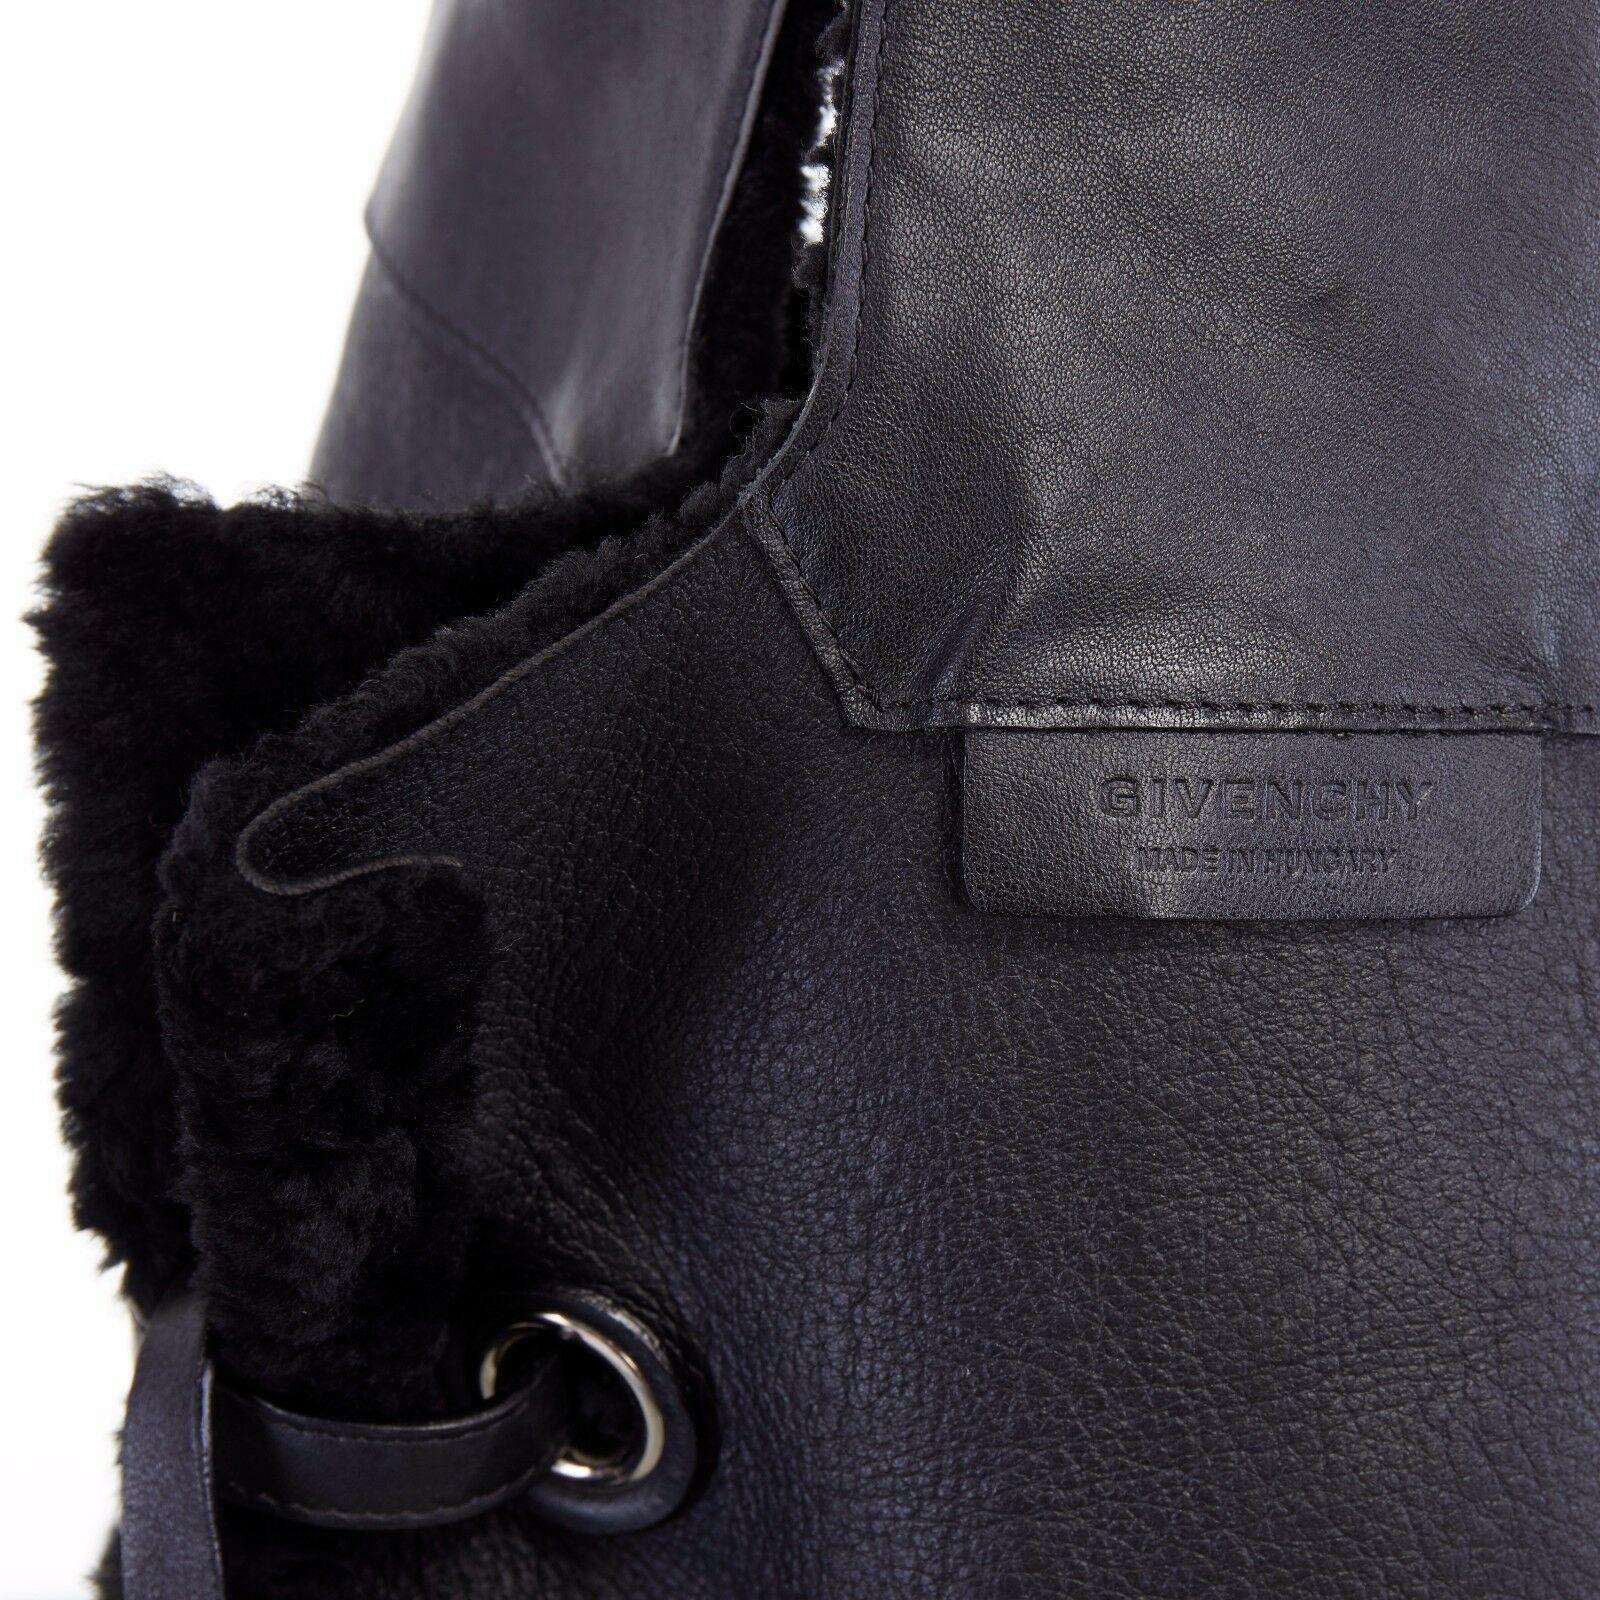 GIVENCHY TISCI black reversible leather shearling fur oversize hobo shoulder bag 6